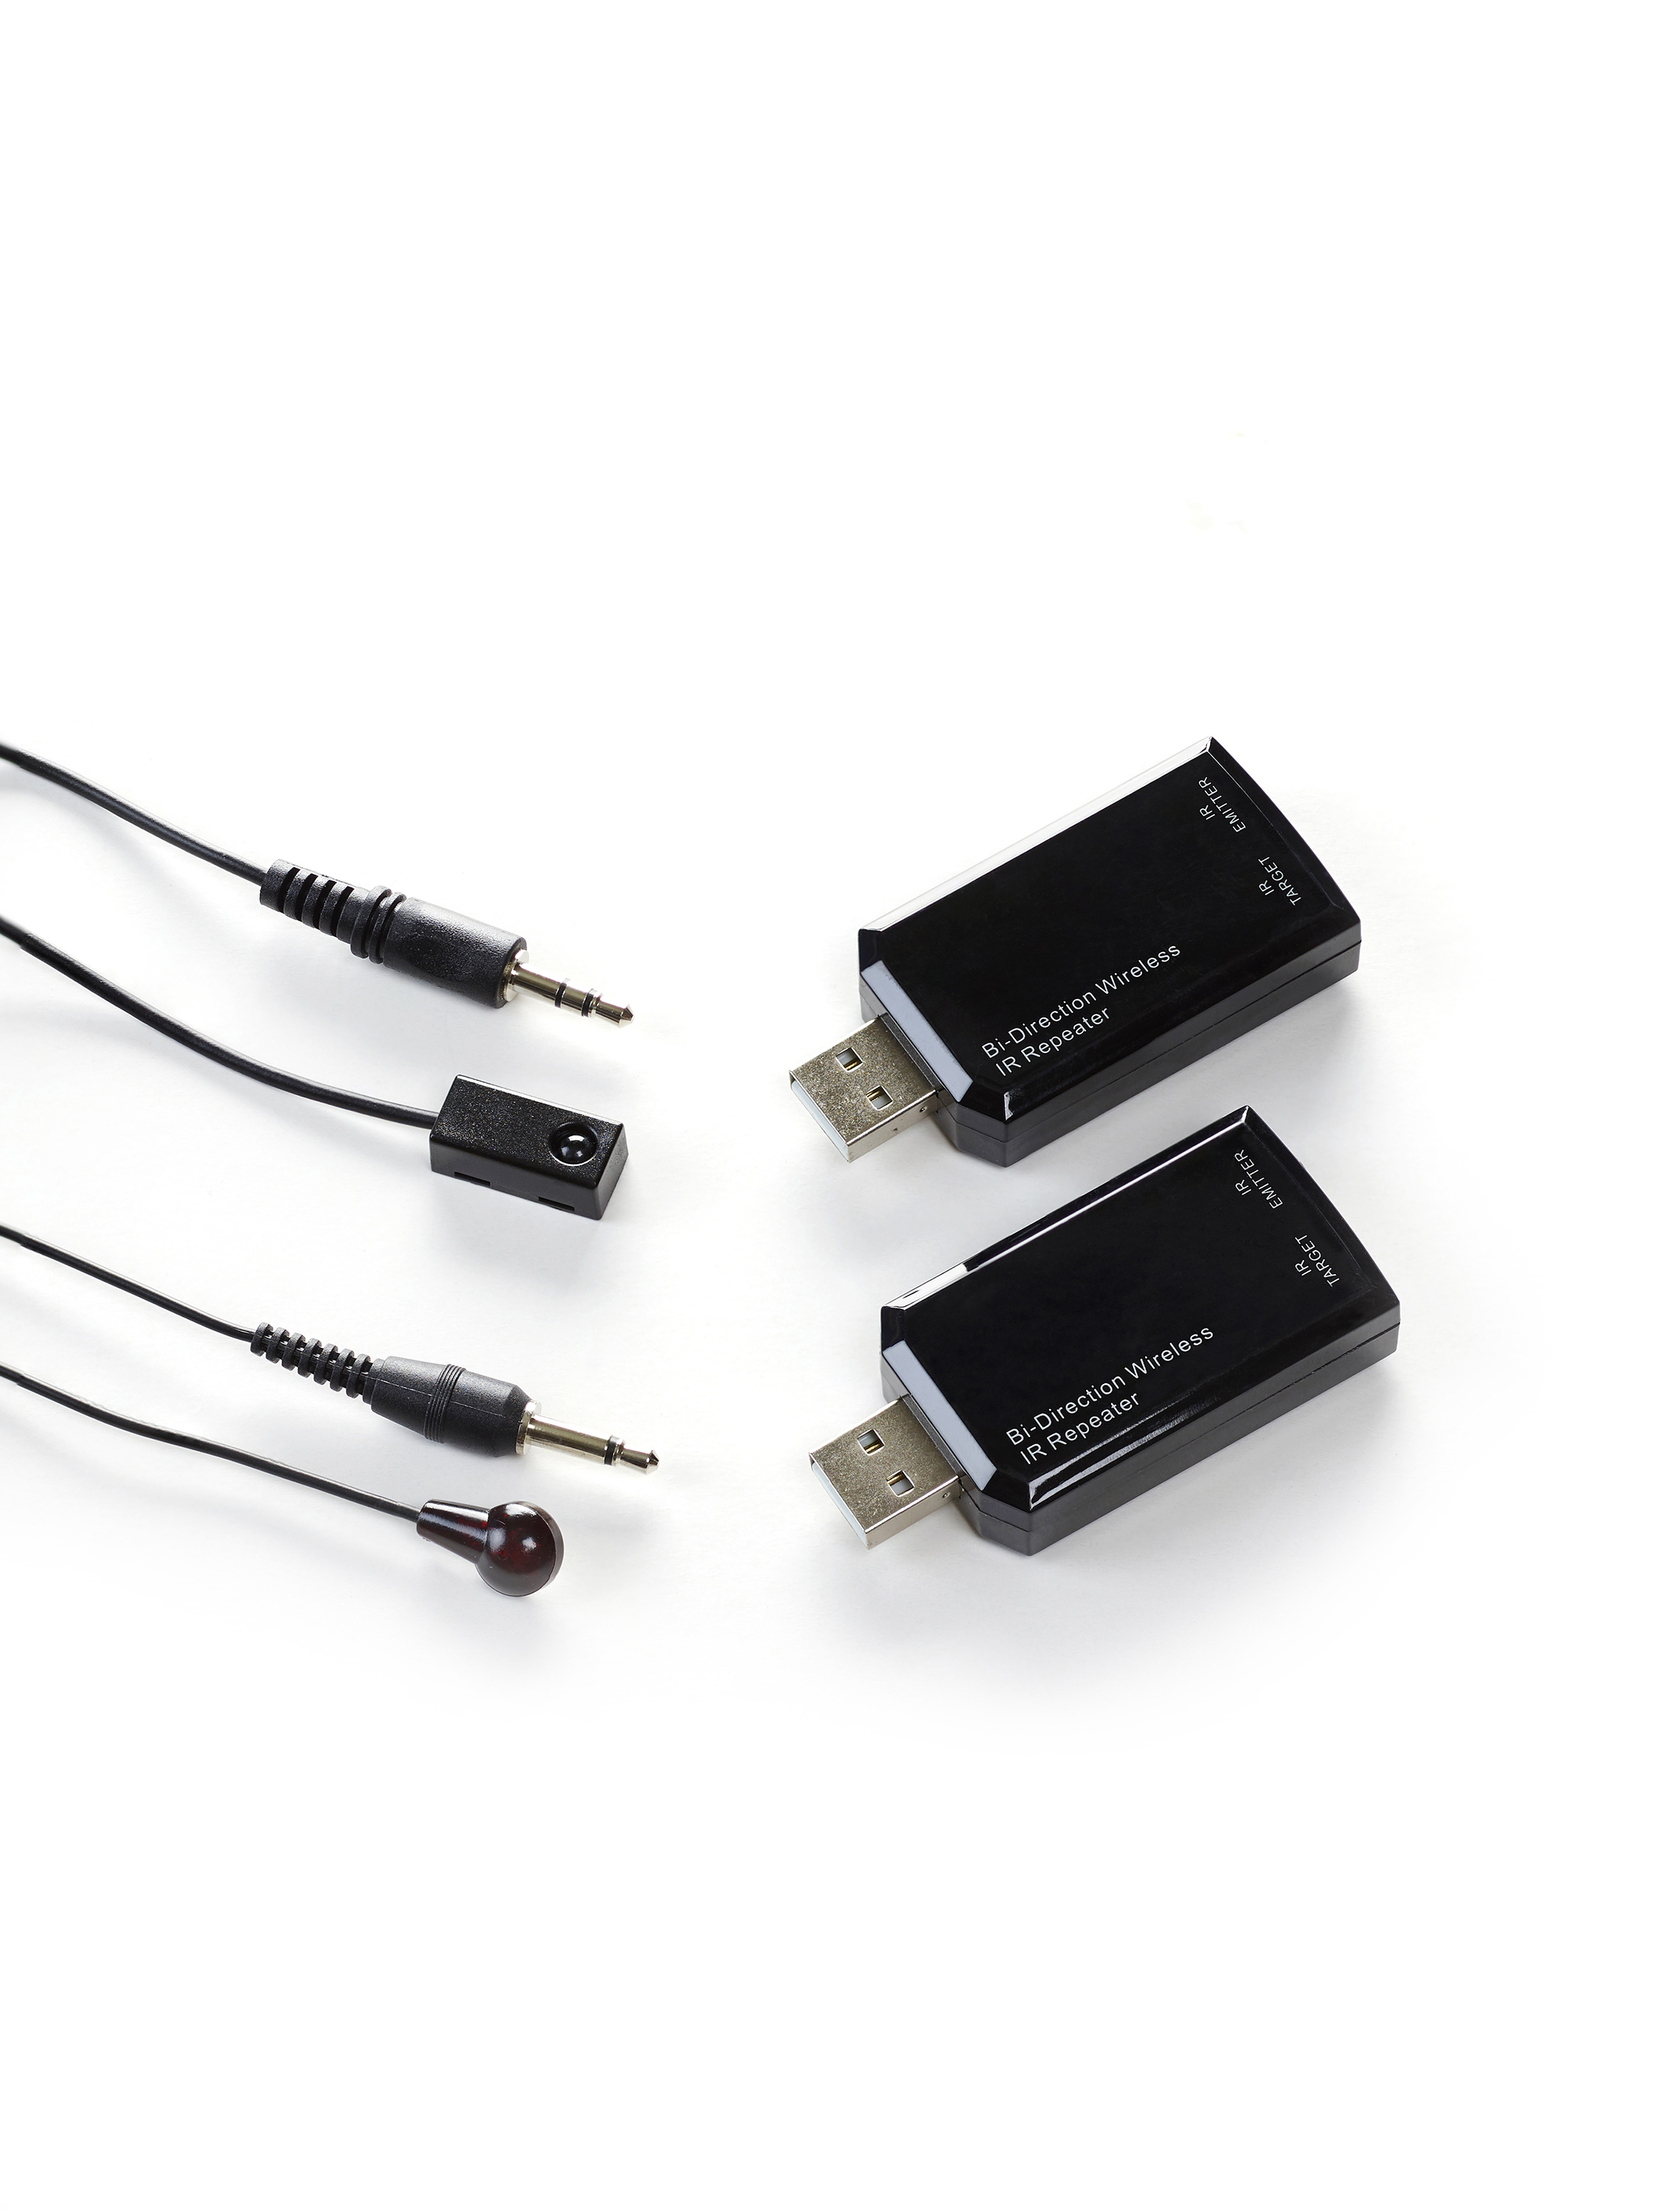 IR USB WIRELESS, kit IR USB sans fil, RF